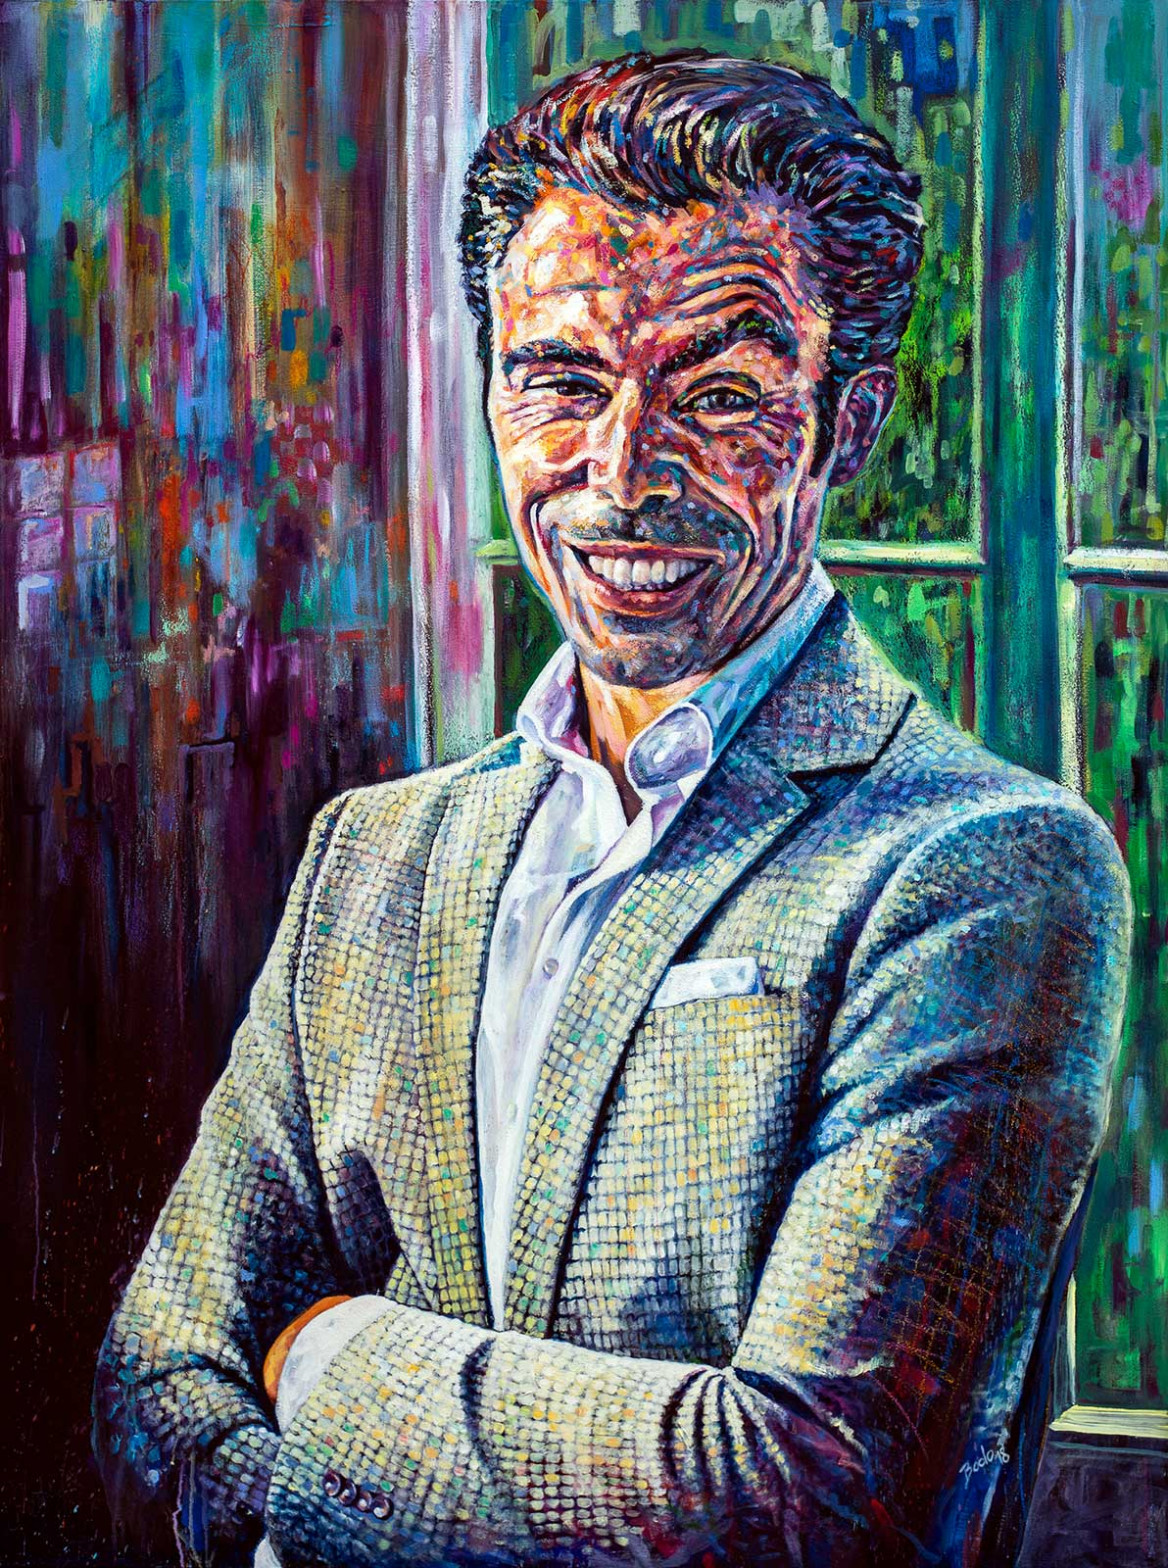 Portrait of man dressed in a jacket painted in oil on canvas; Porträt eines Mannes im Jackett gemalt in Oel auf Leinwand